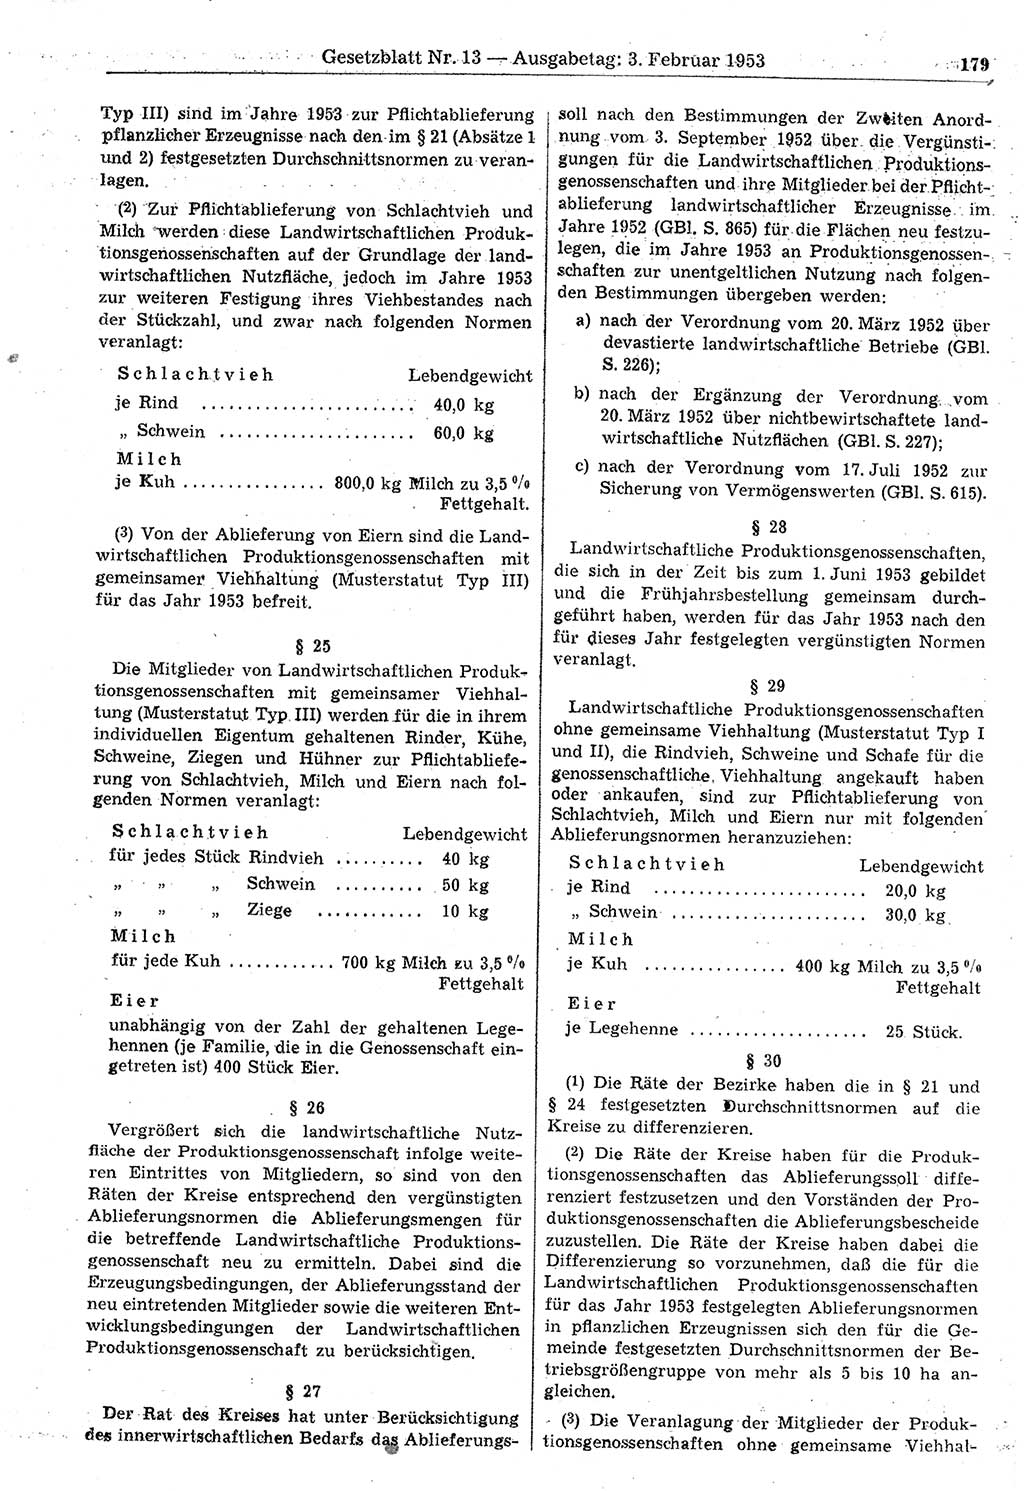 Gesetzblatt (GBl.) der Deutschen Demokratischen Republik (DDR) 1953, Seite 179 (GBl. DDR 1953, S. 179)